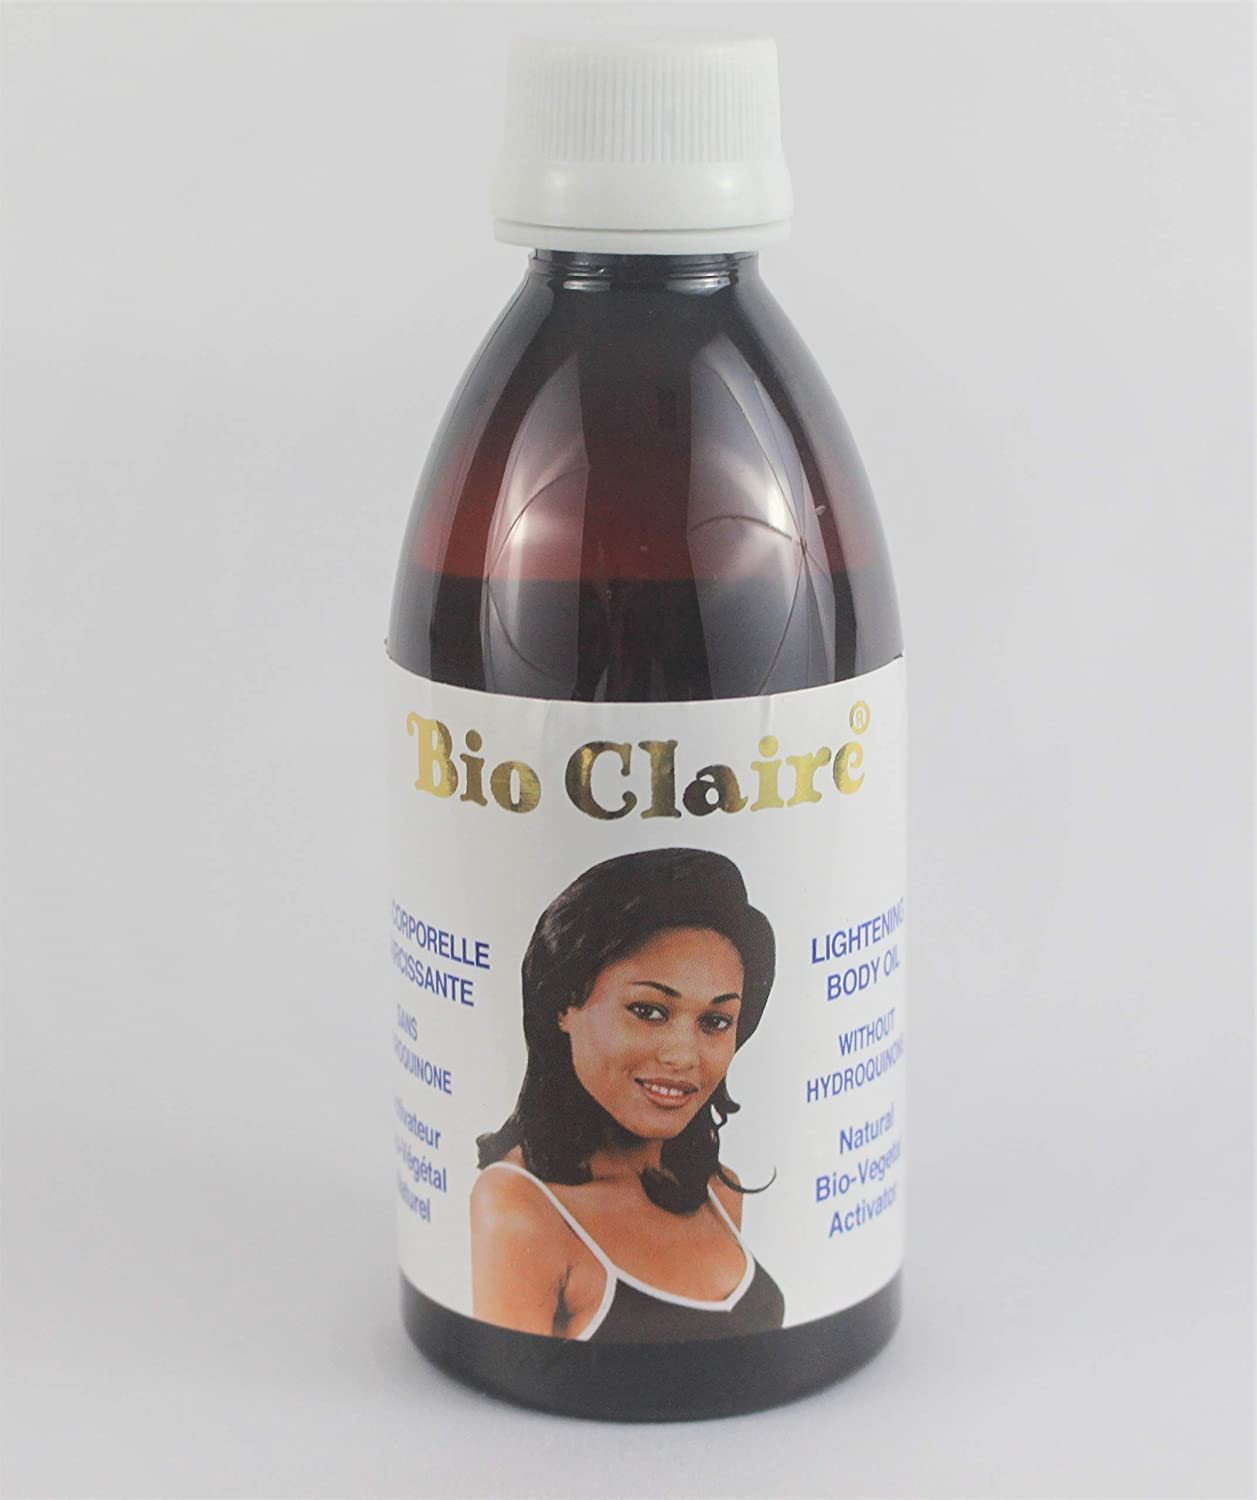 Bio claire oil - $15.80